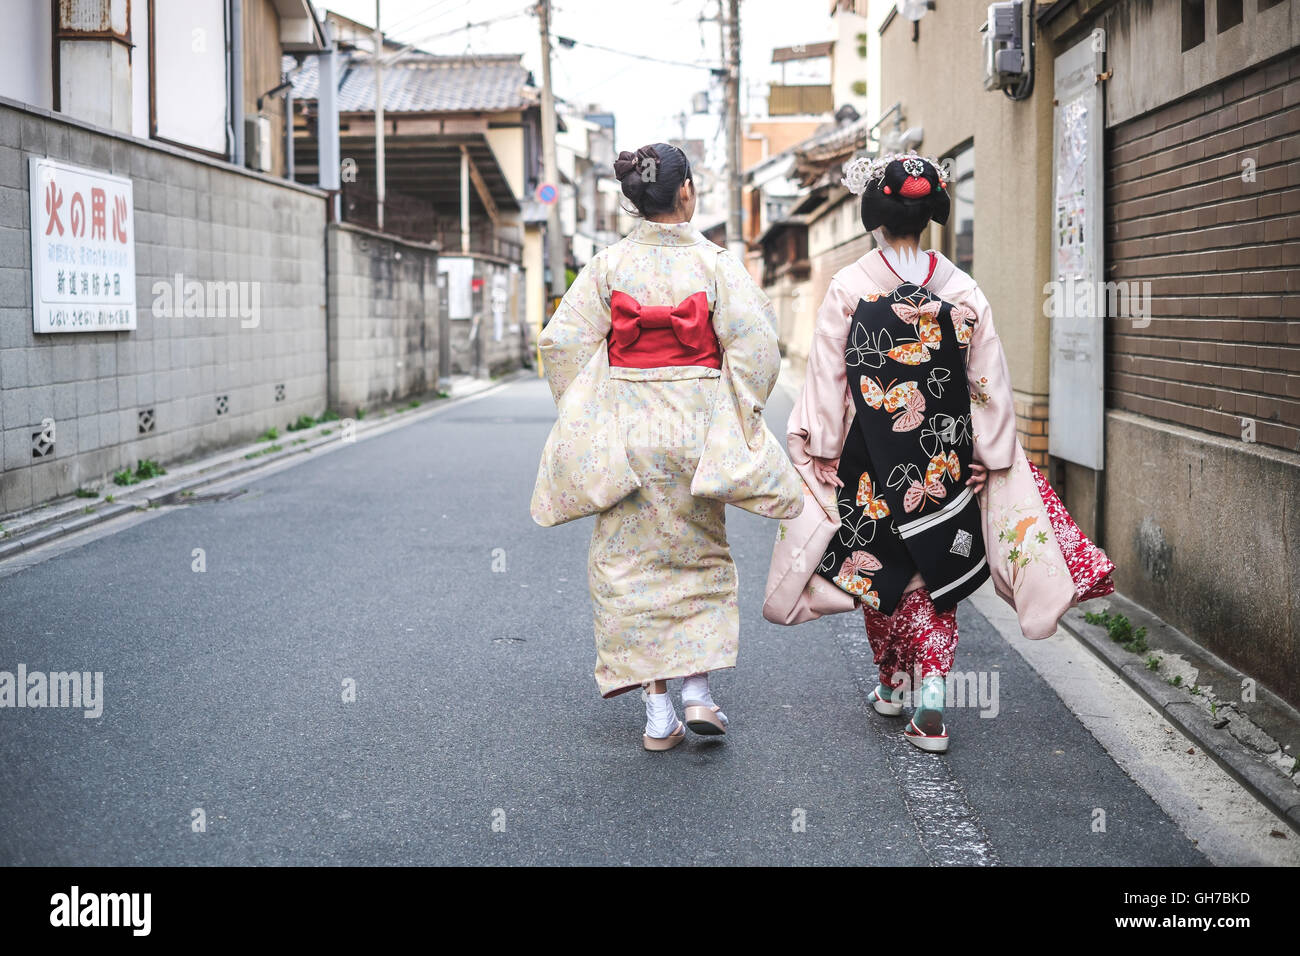 La beauté d'une geisha dans le streeets de Kyoto, Japon Banque D'Images